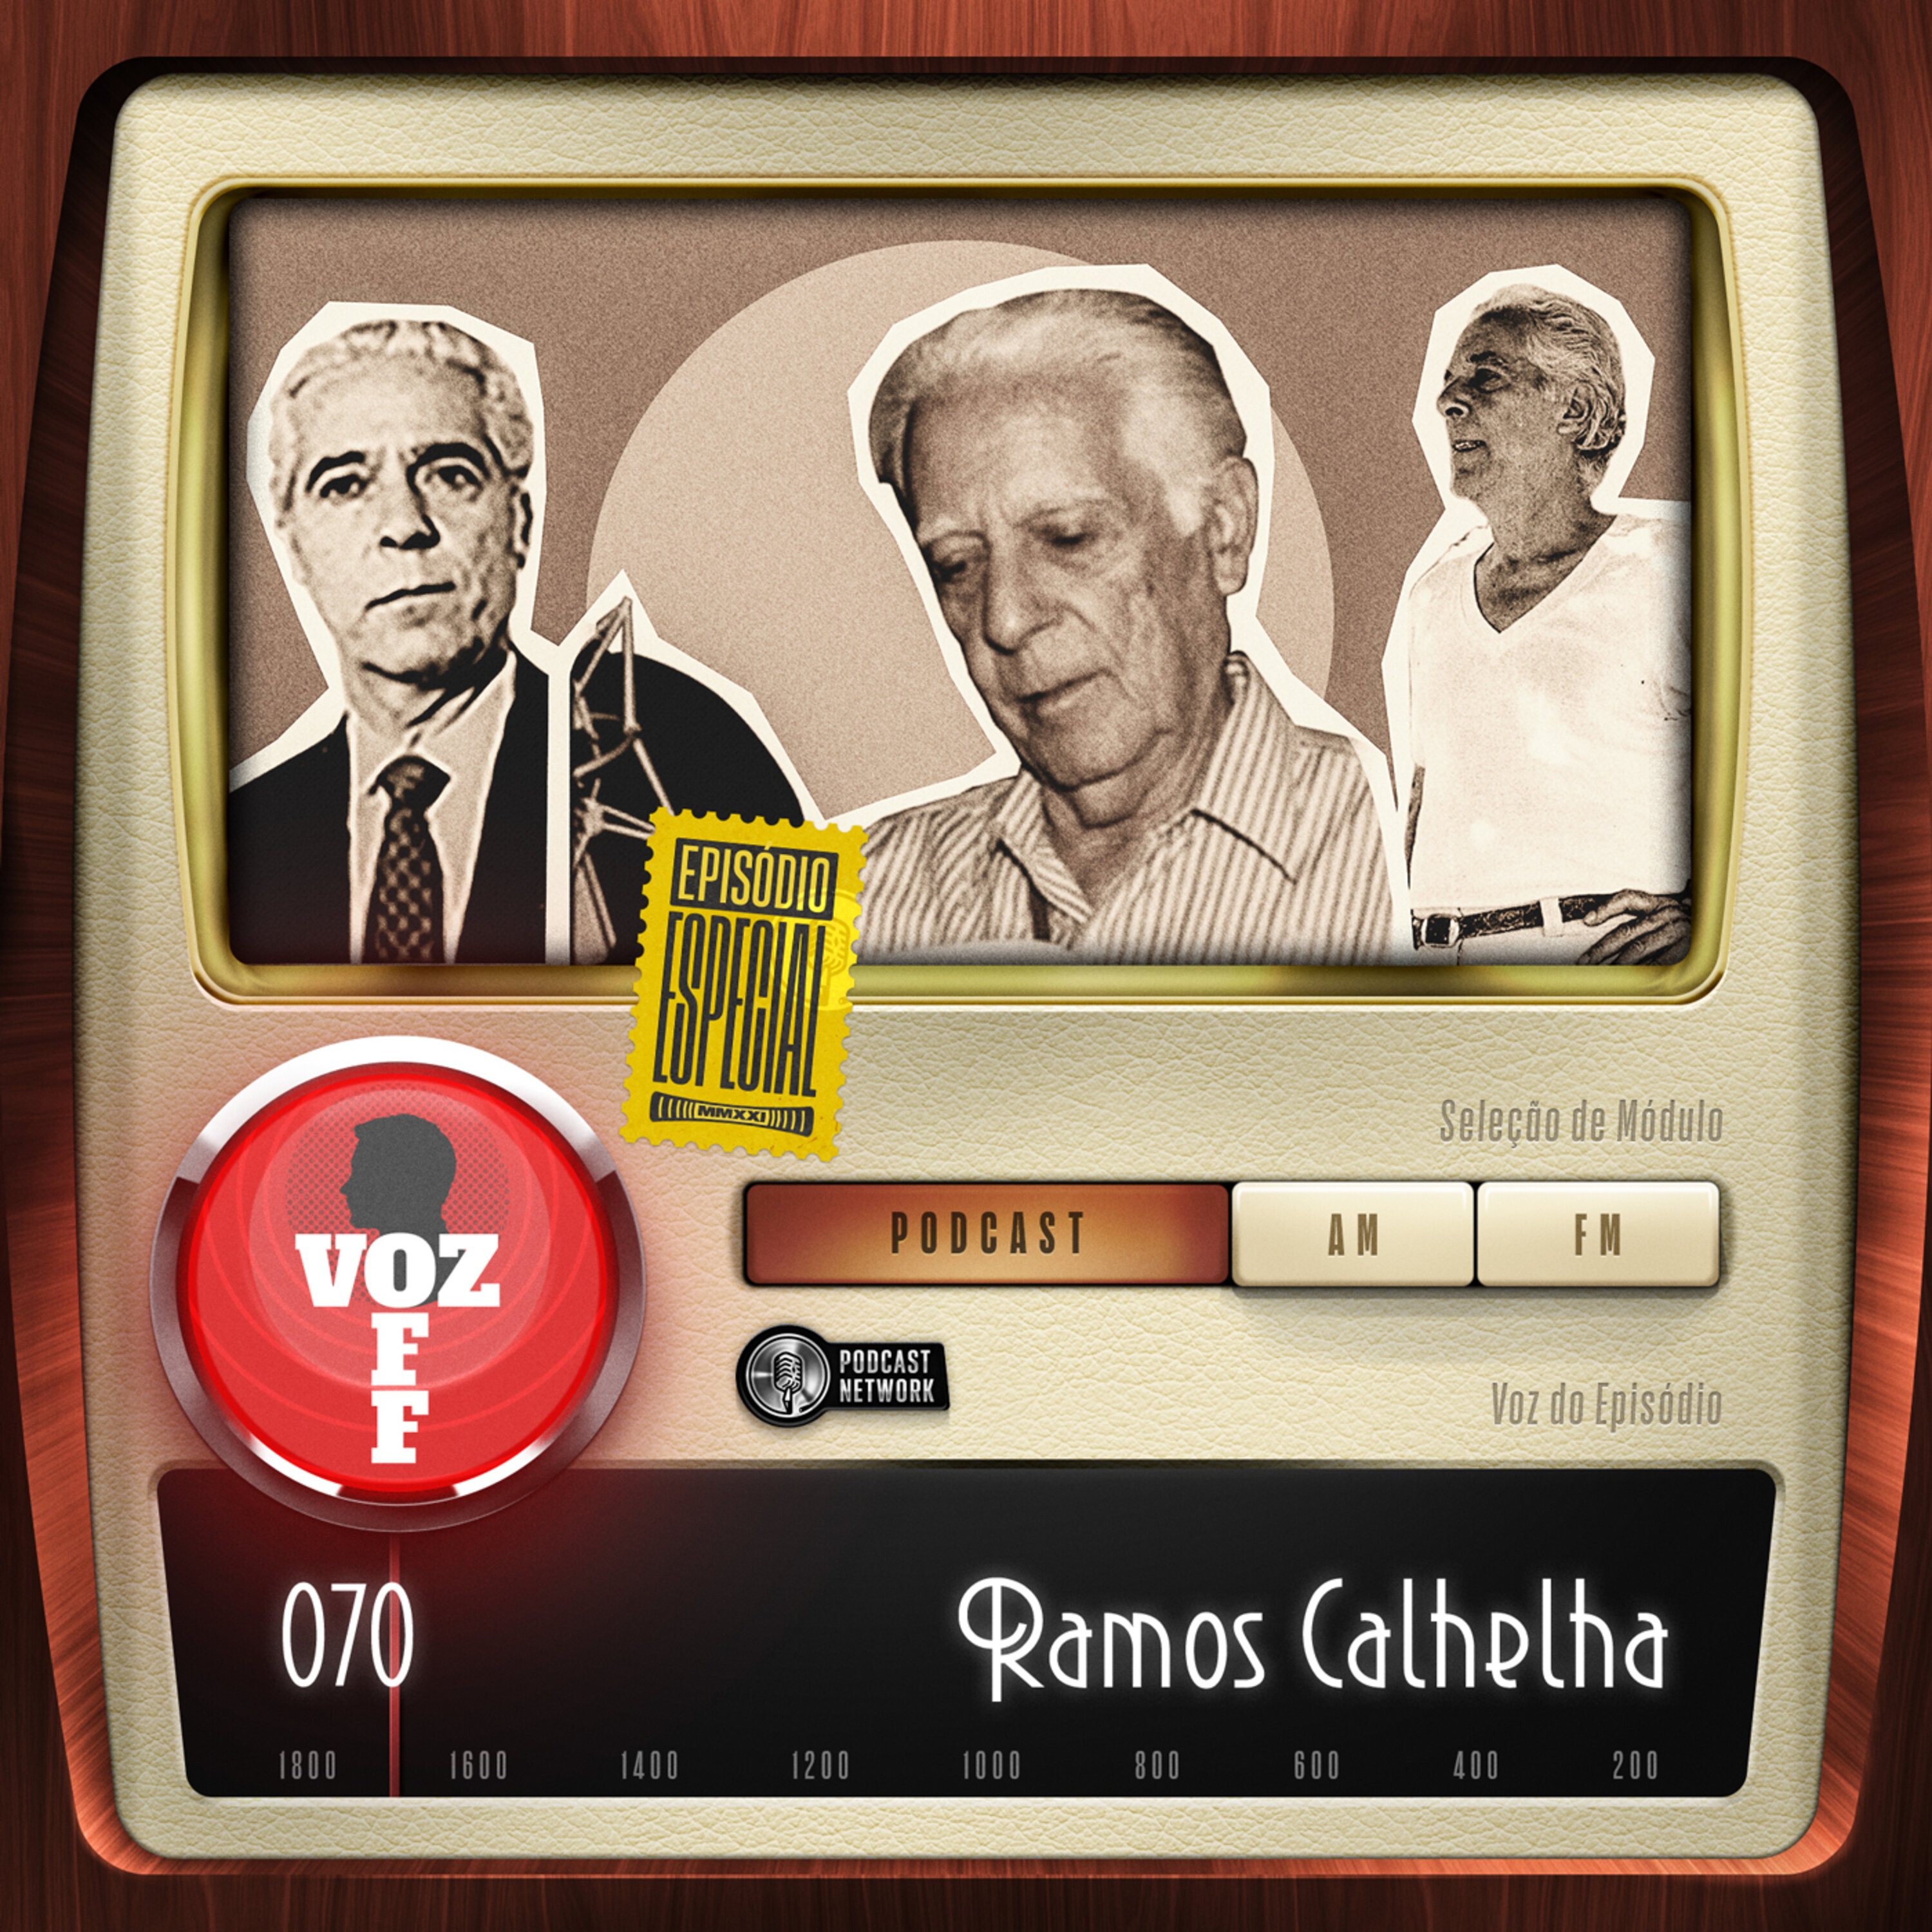 VOZ 0FF 070 - ESPECIAL - Ramos Calhelha